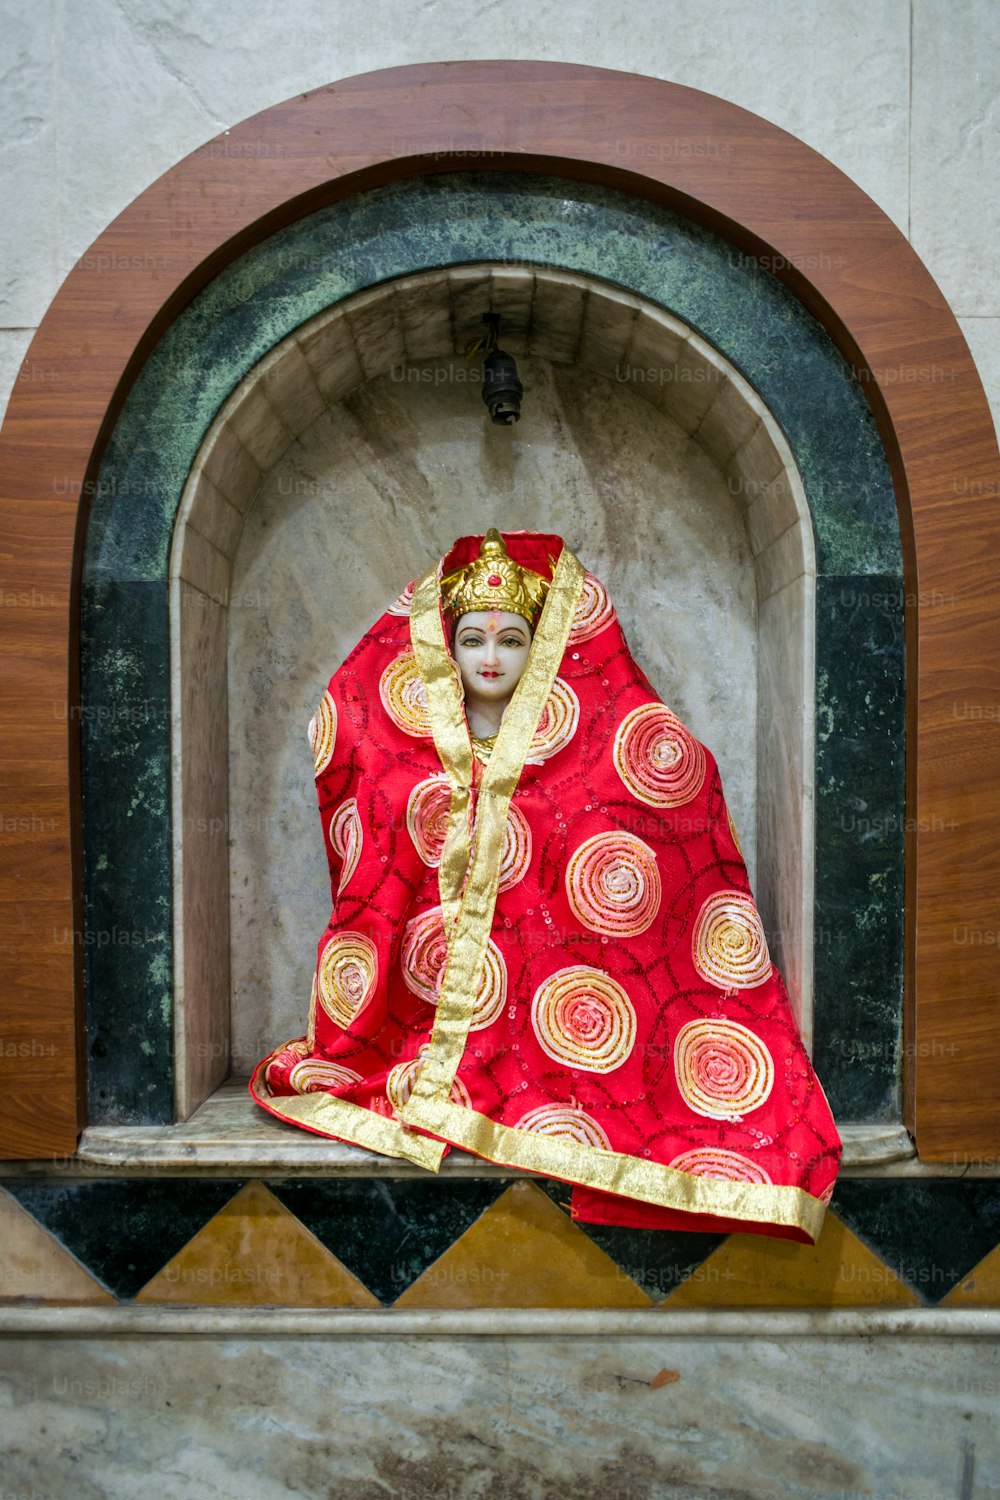 une statue d’une femme vêtue d’un costume rouge et or